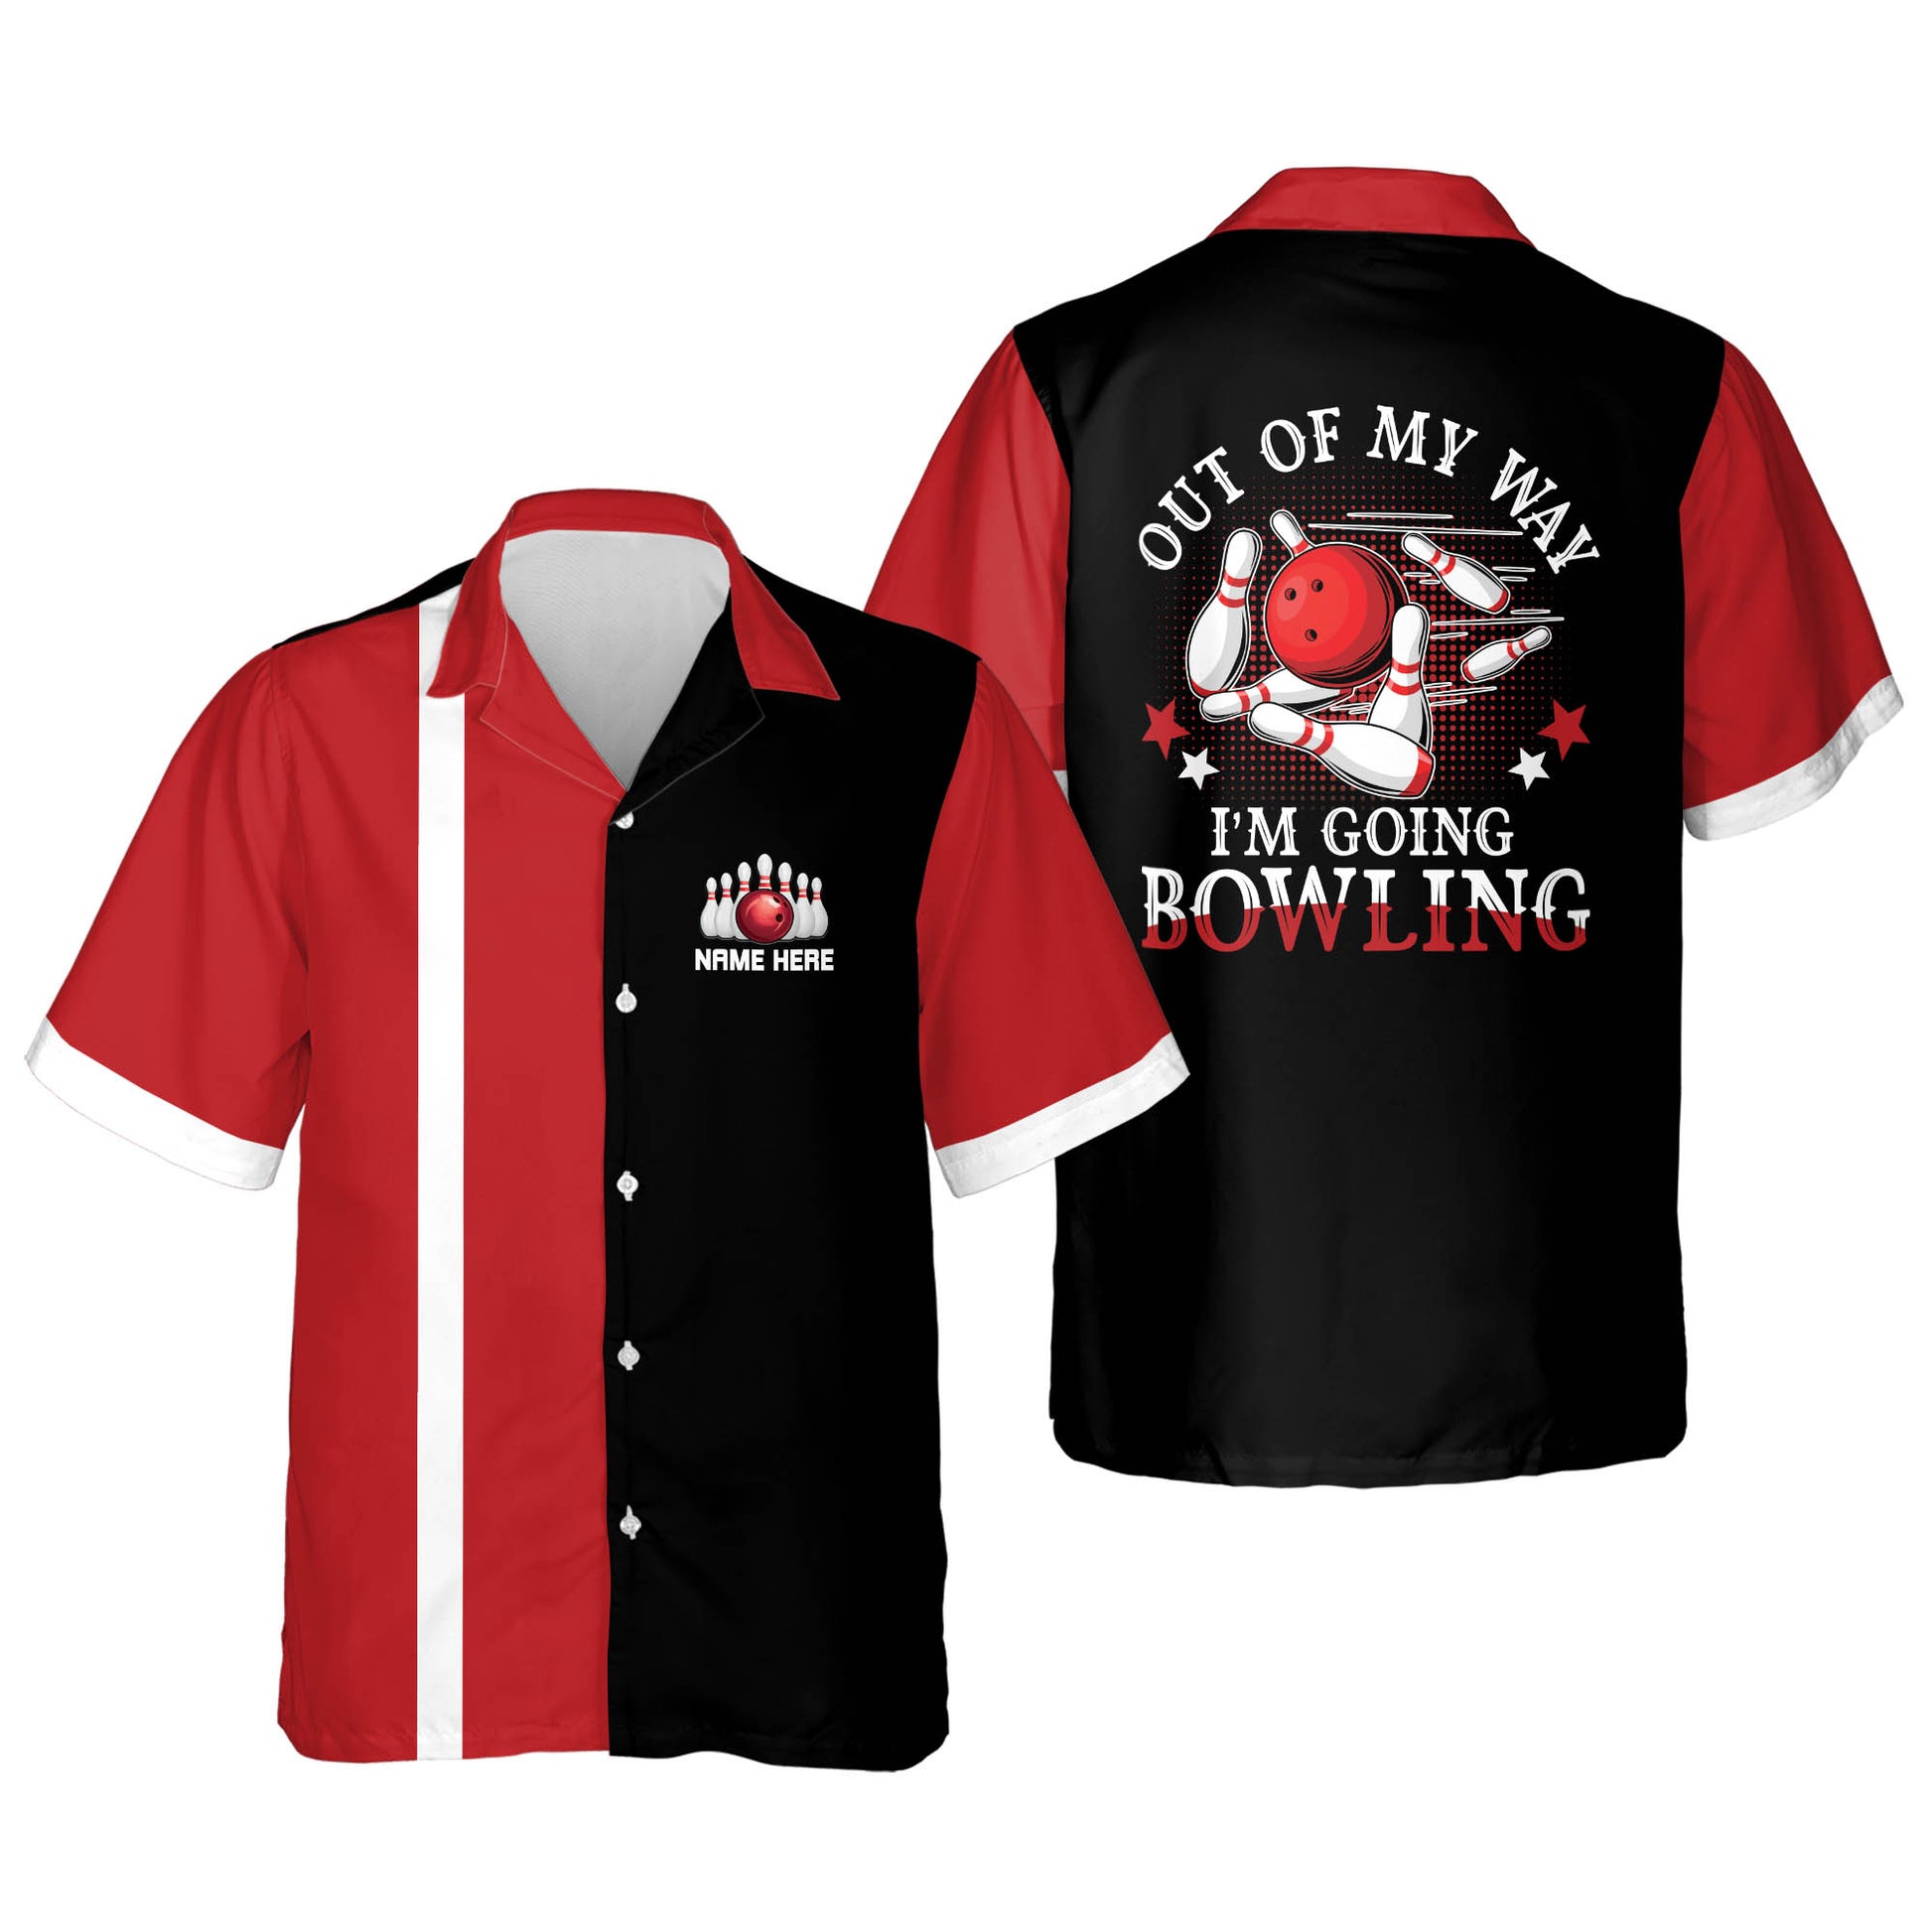  Personalized Bowling Shirt, Bowling Shirts for Men